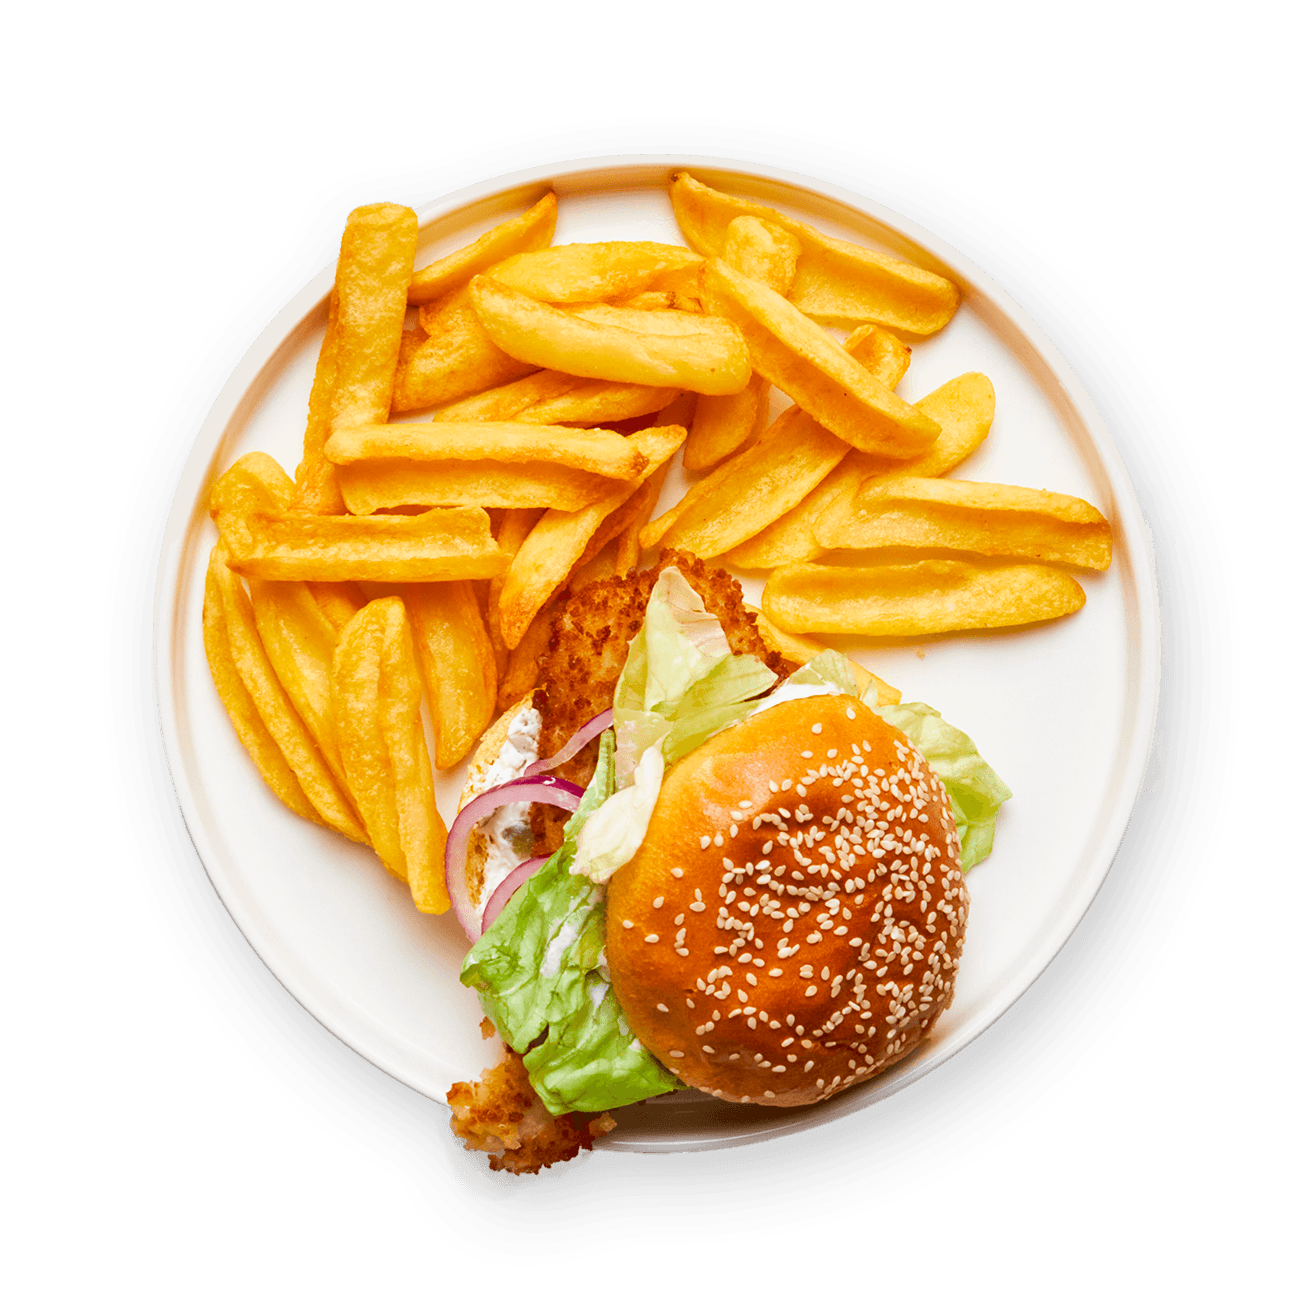 fish-burger-et-frites